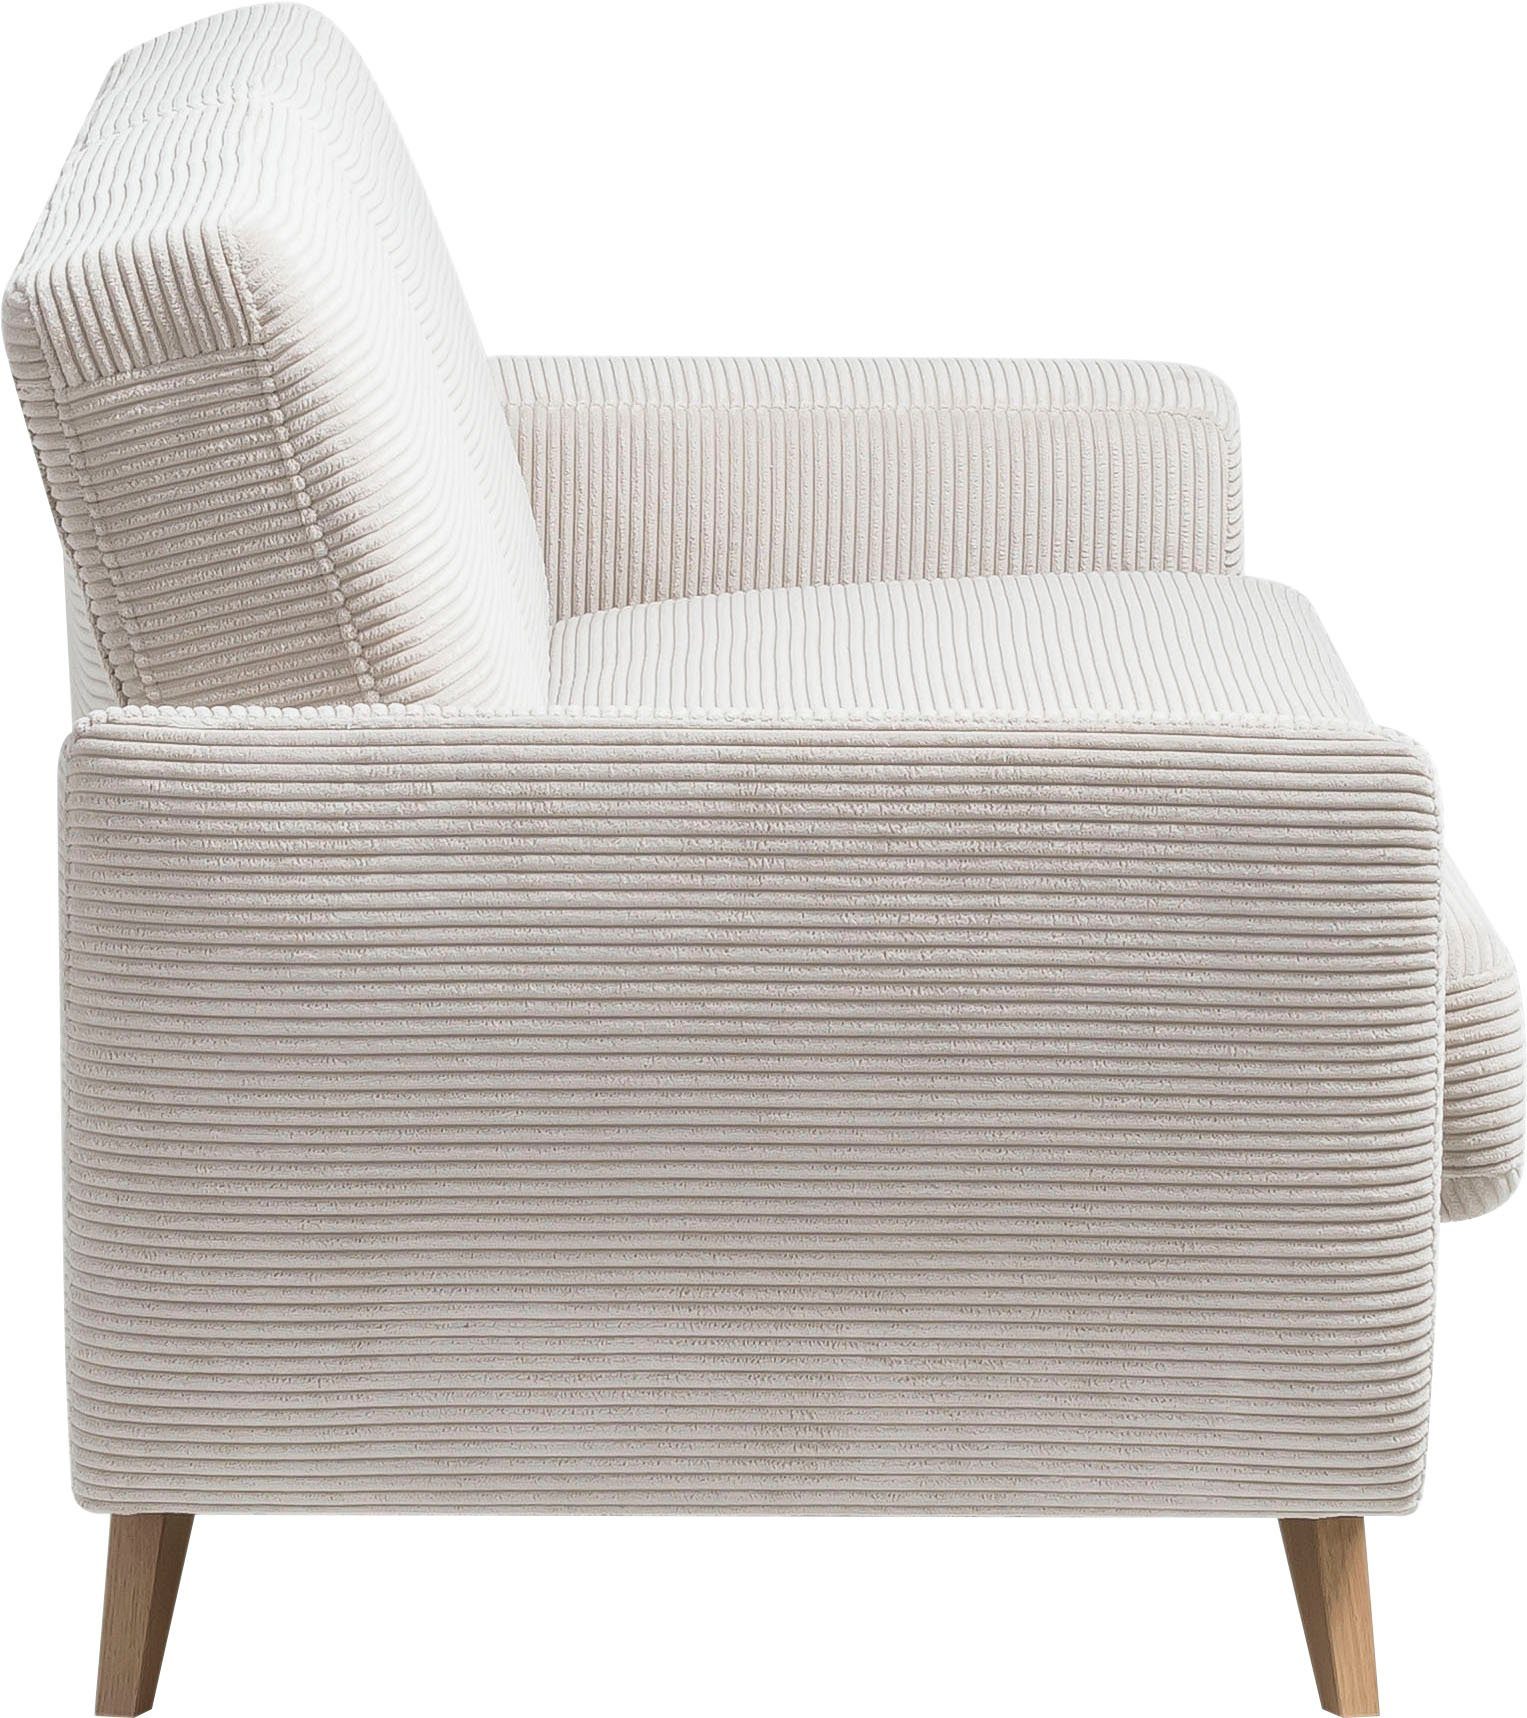 exxpo - Bettkasten Samso, Bettfunktion sofa Inklusive 3-Sitzer fashion beige und